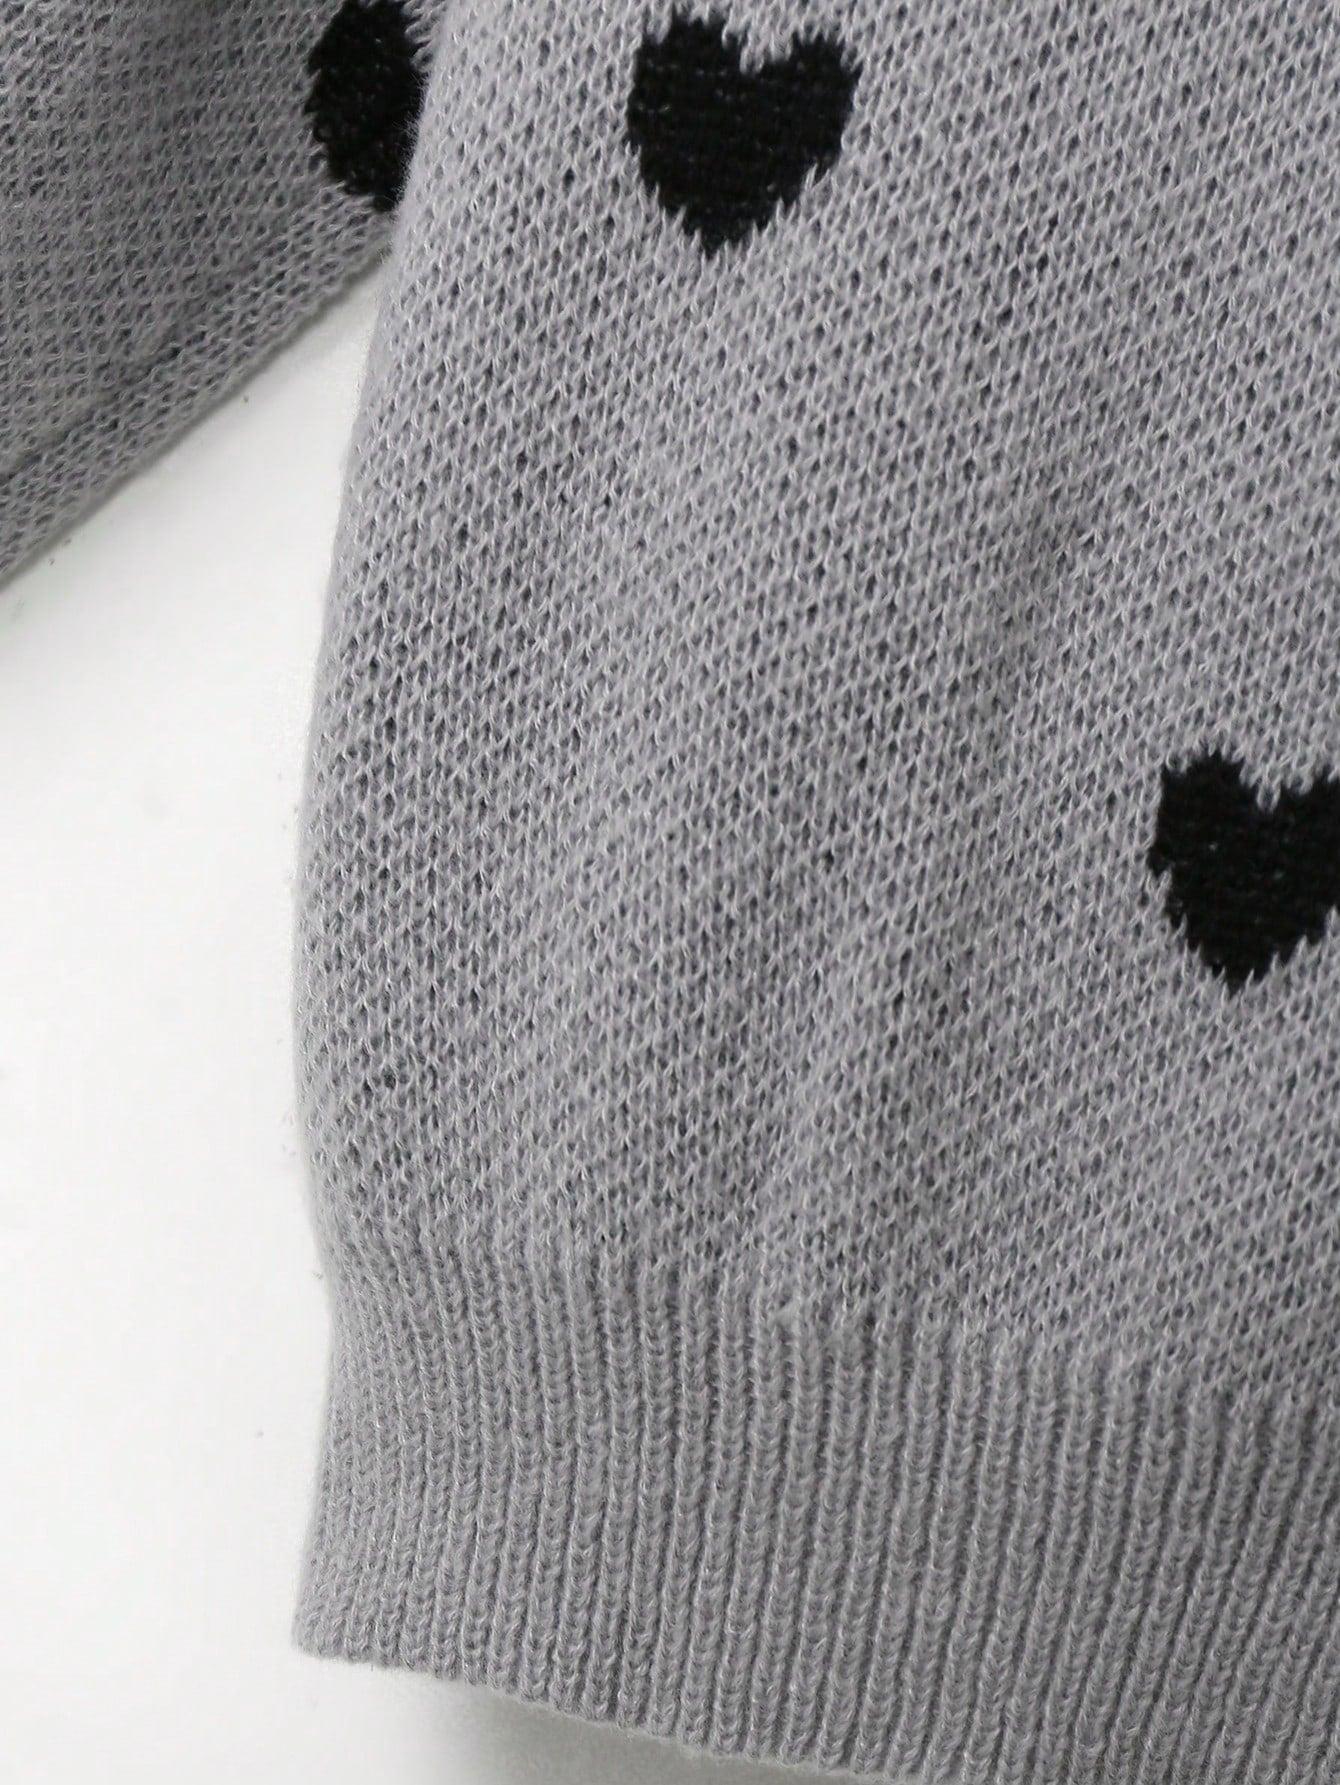 szary sweter stójka wzór serca